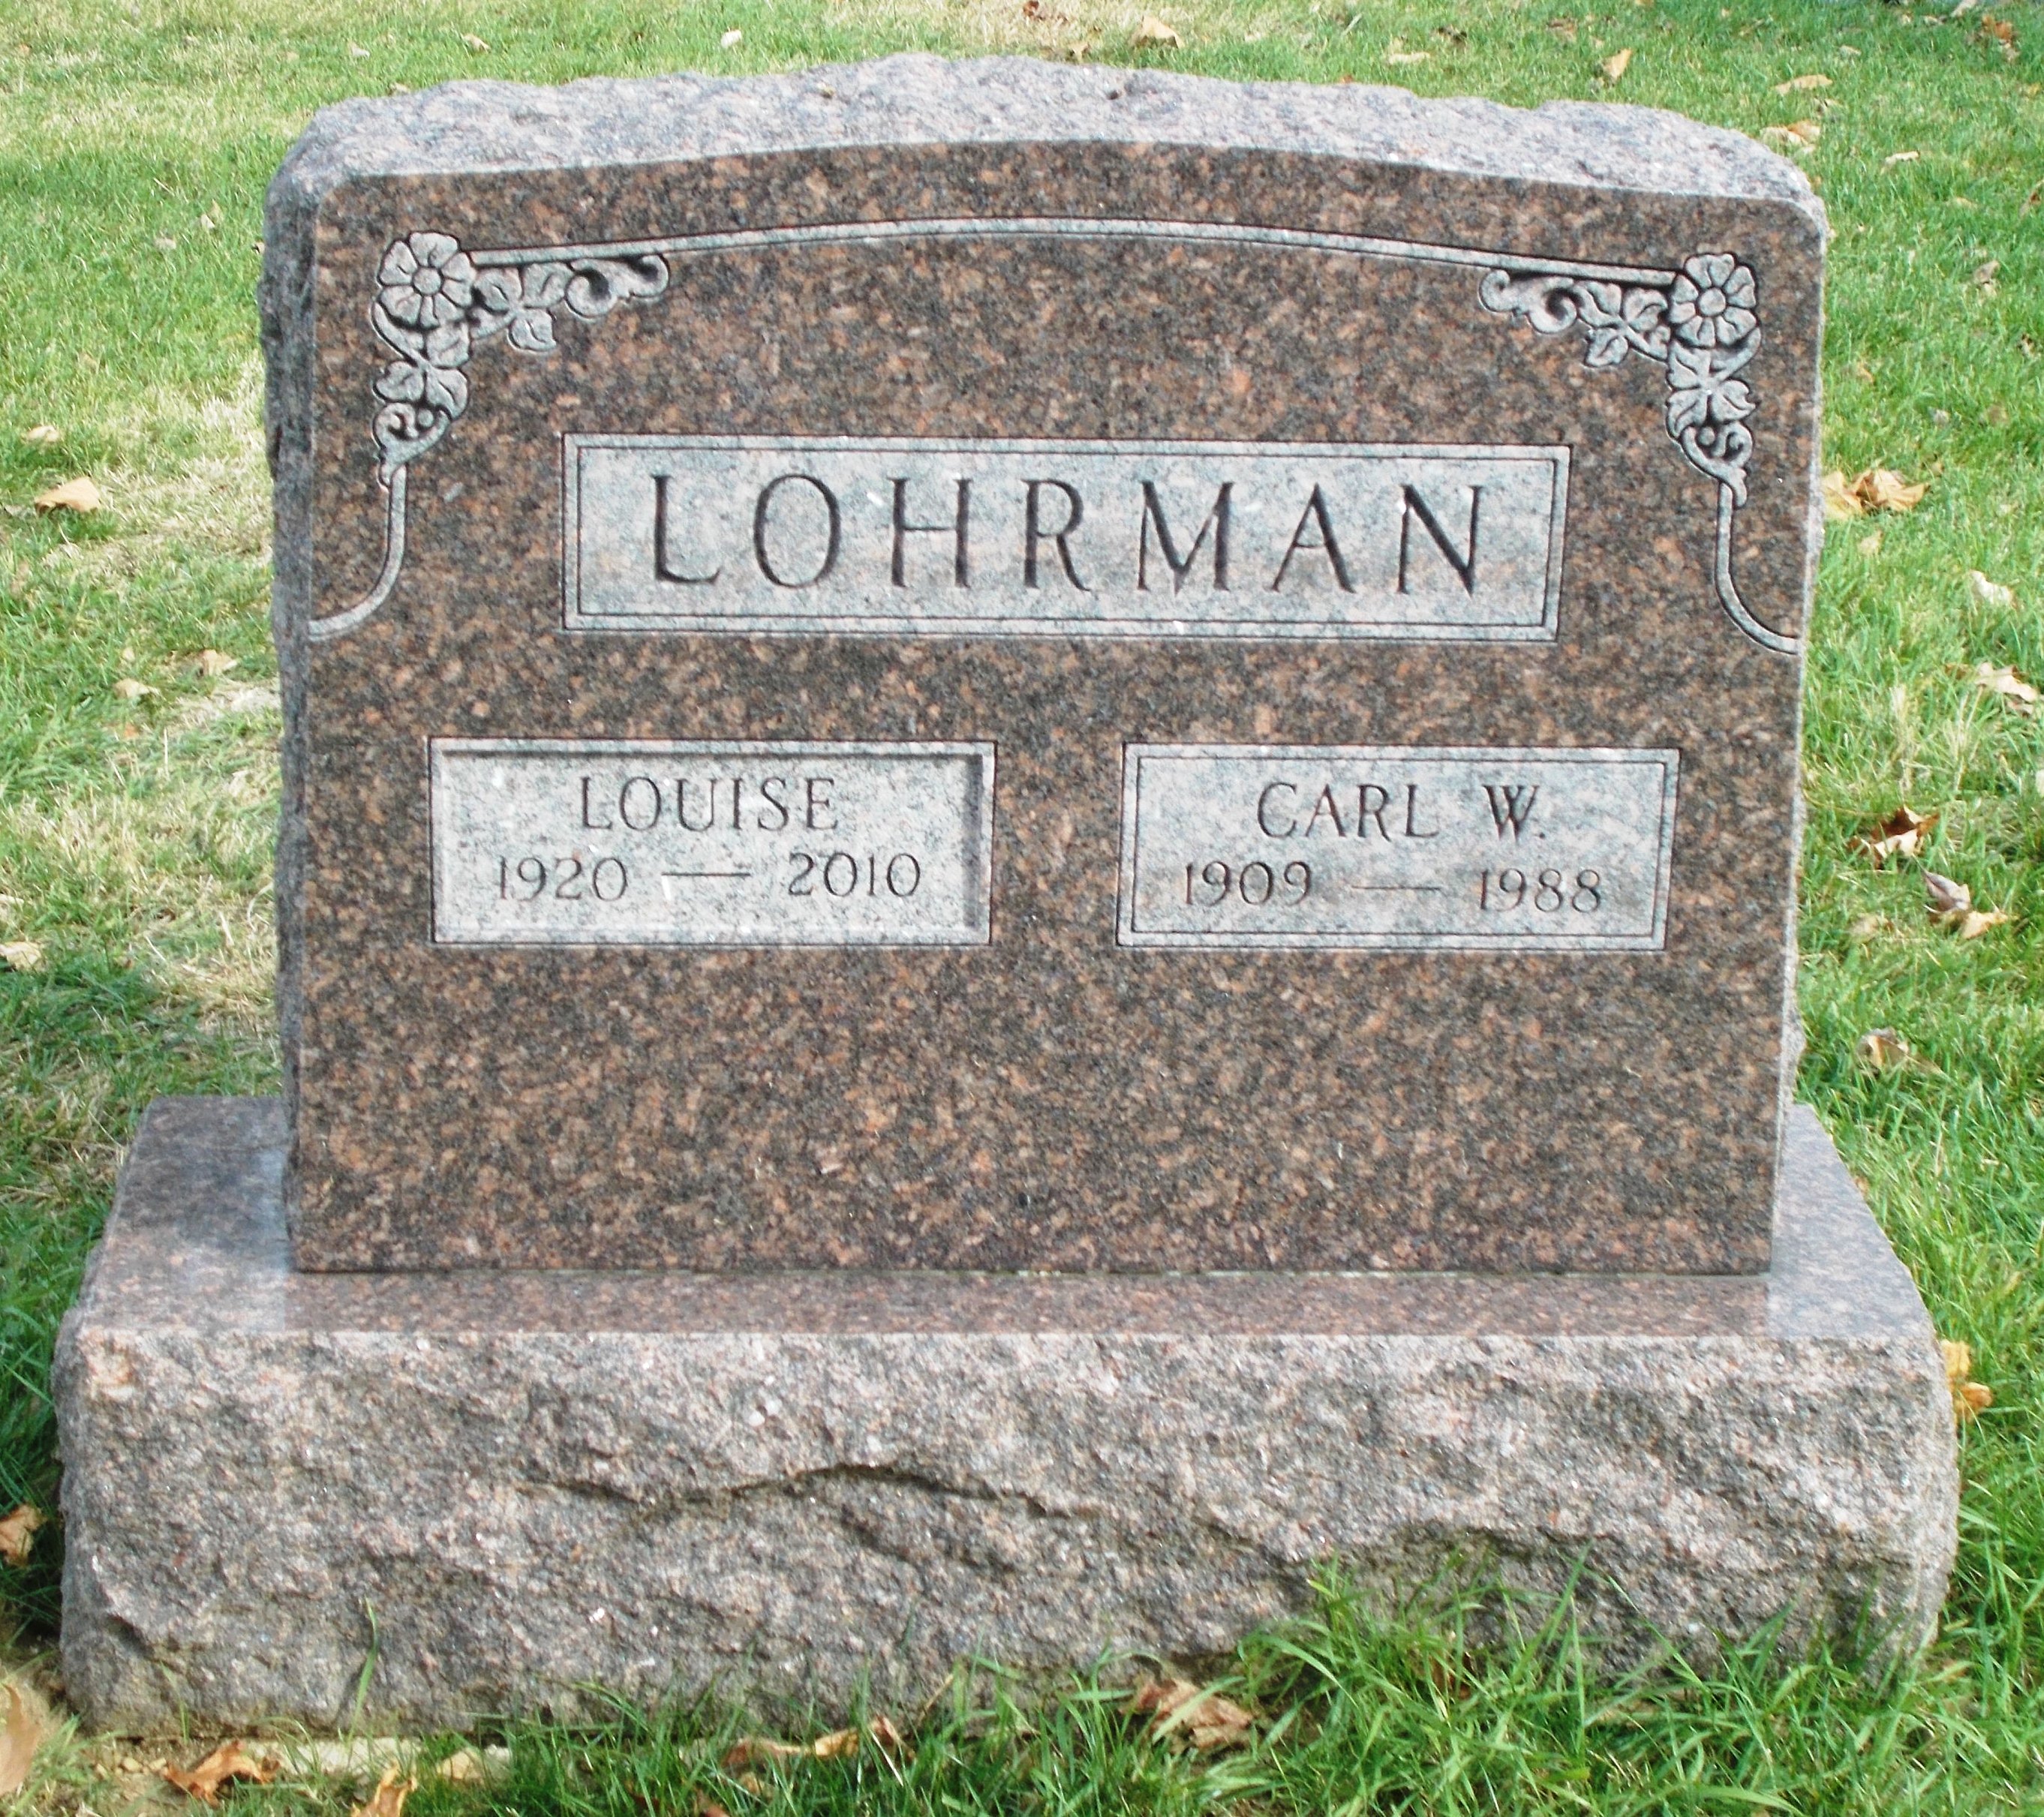 Carl W Lohrman